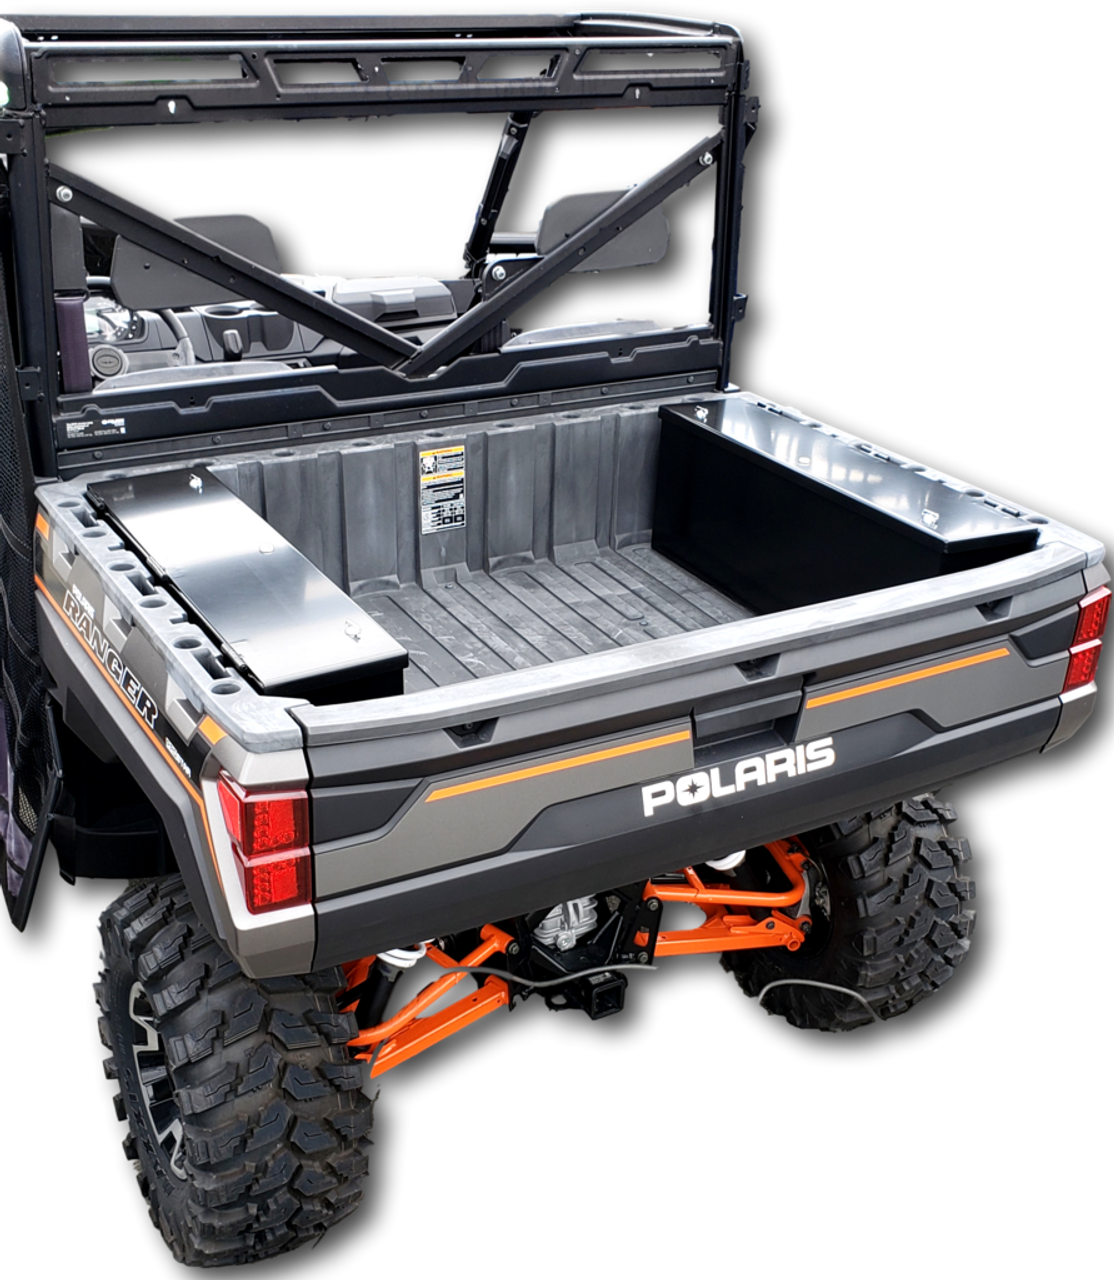 New Style Polaris Ranger Storage Security Box